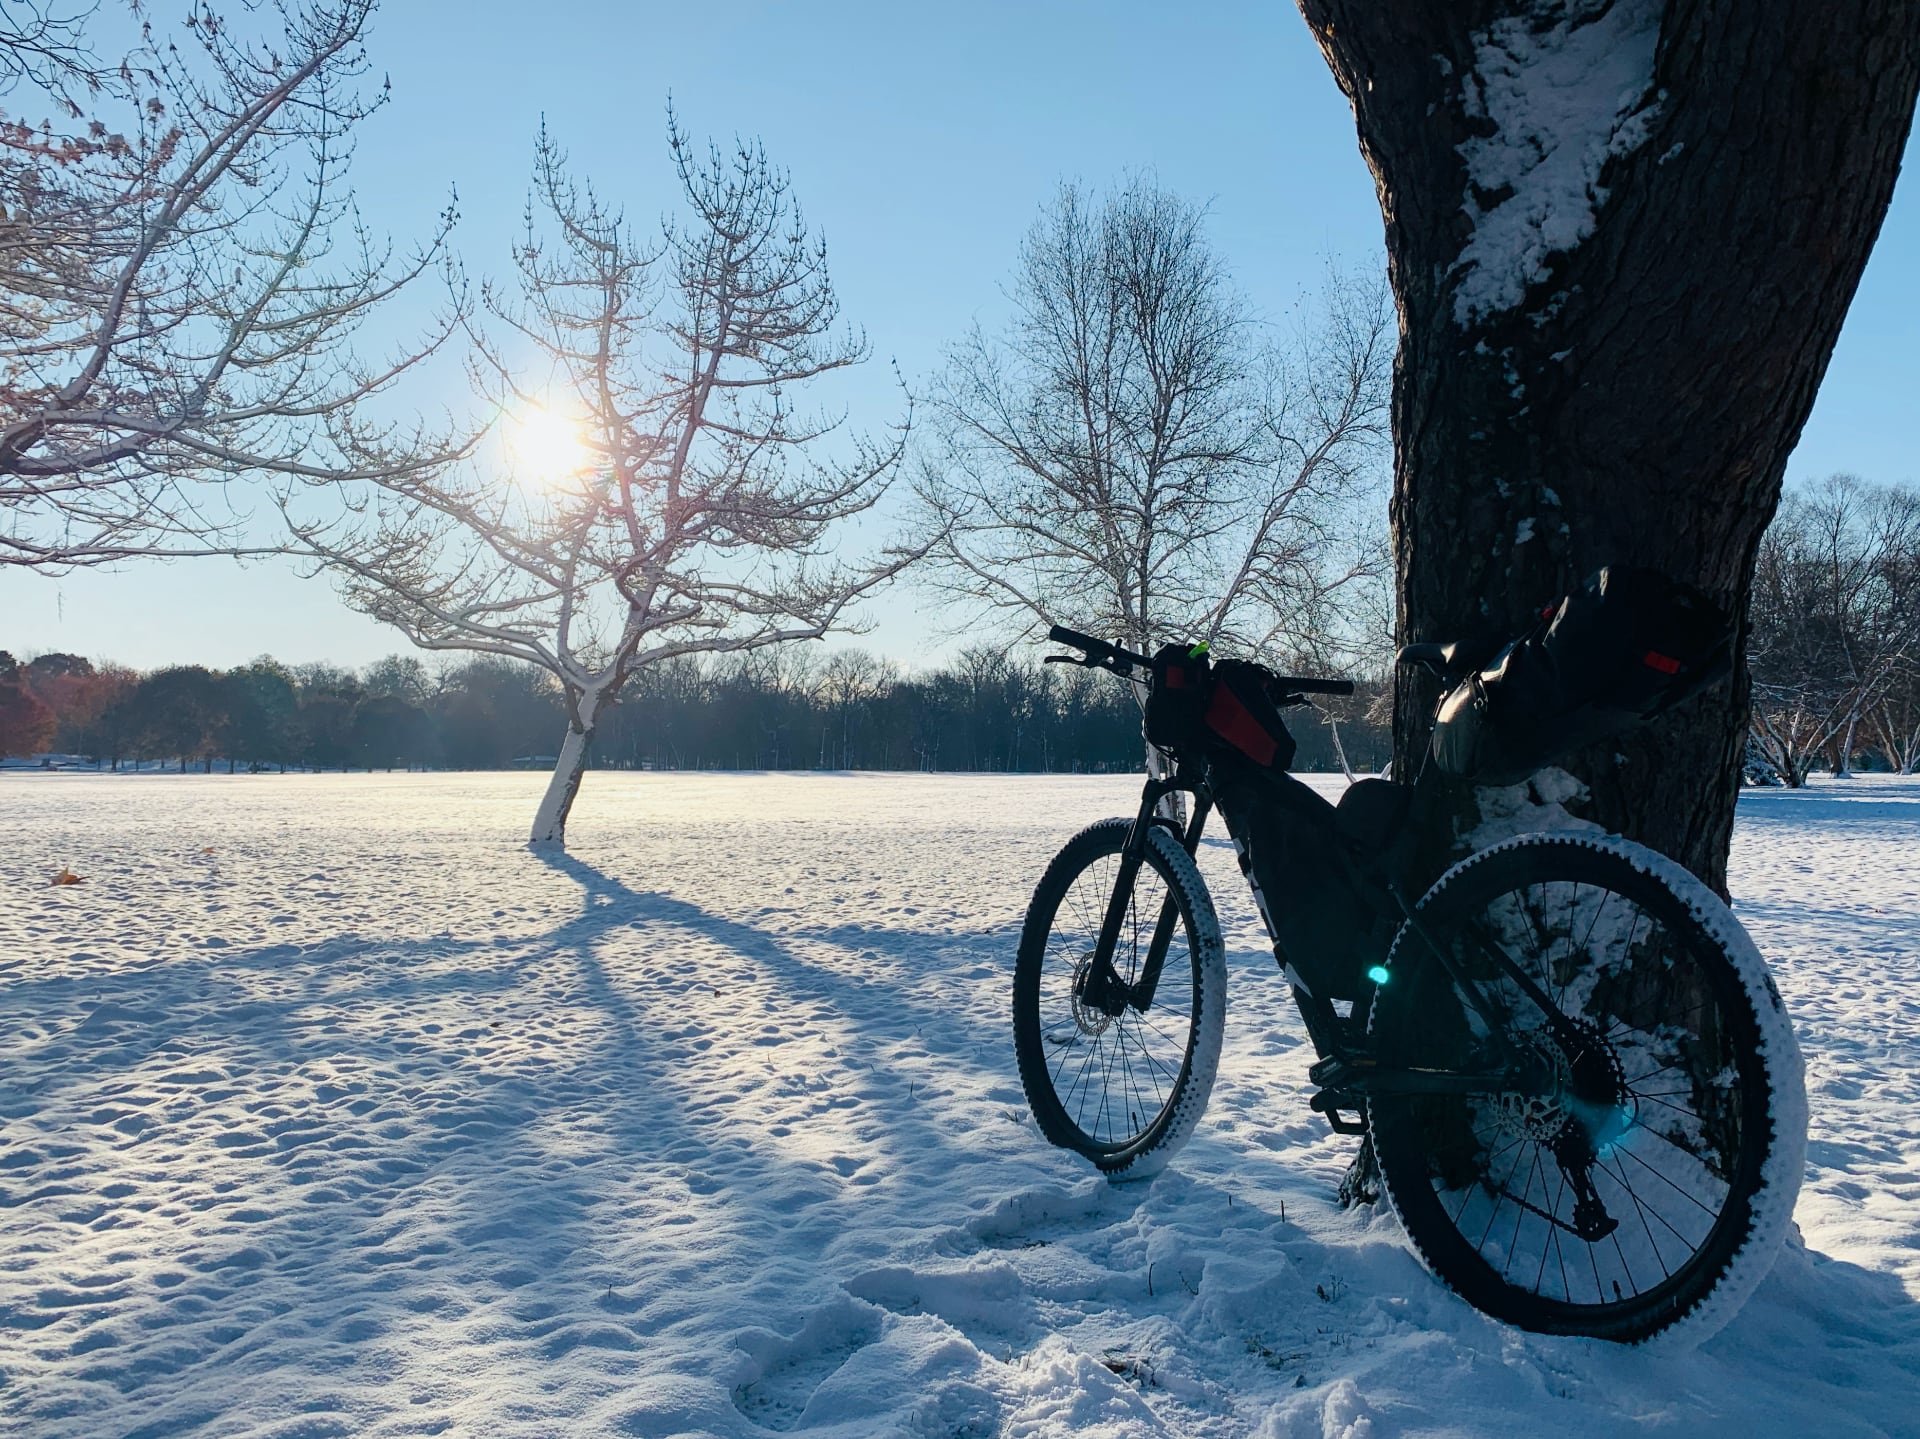 The new mountain bike riding through snow